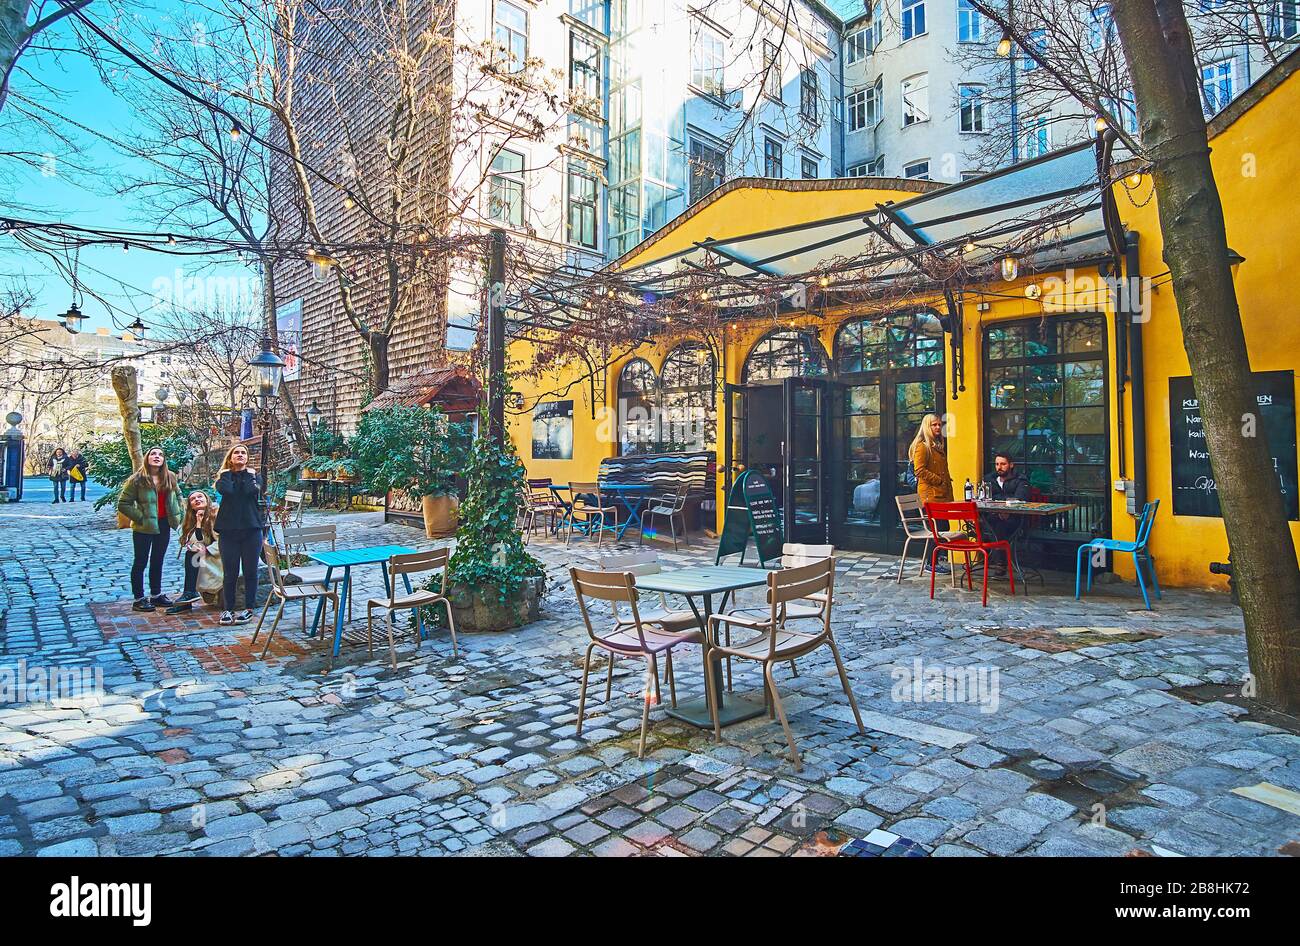 VIENNE, AUTRICHE - 19 FÉVRIER 2019: Le petit café dans la cour du musée Hundertwasser (Kunst Haus Wien), avec terrasse ombragée et petites tables, sur Fe Banque D'Images